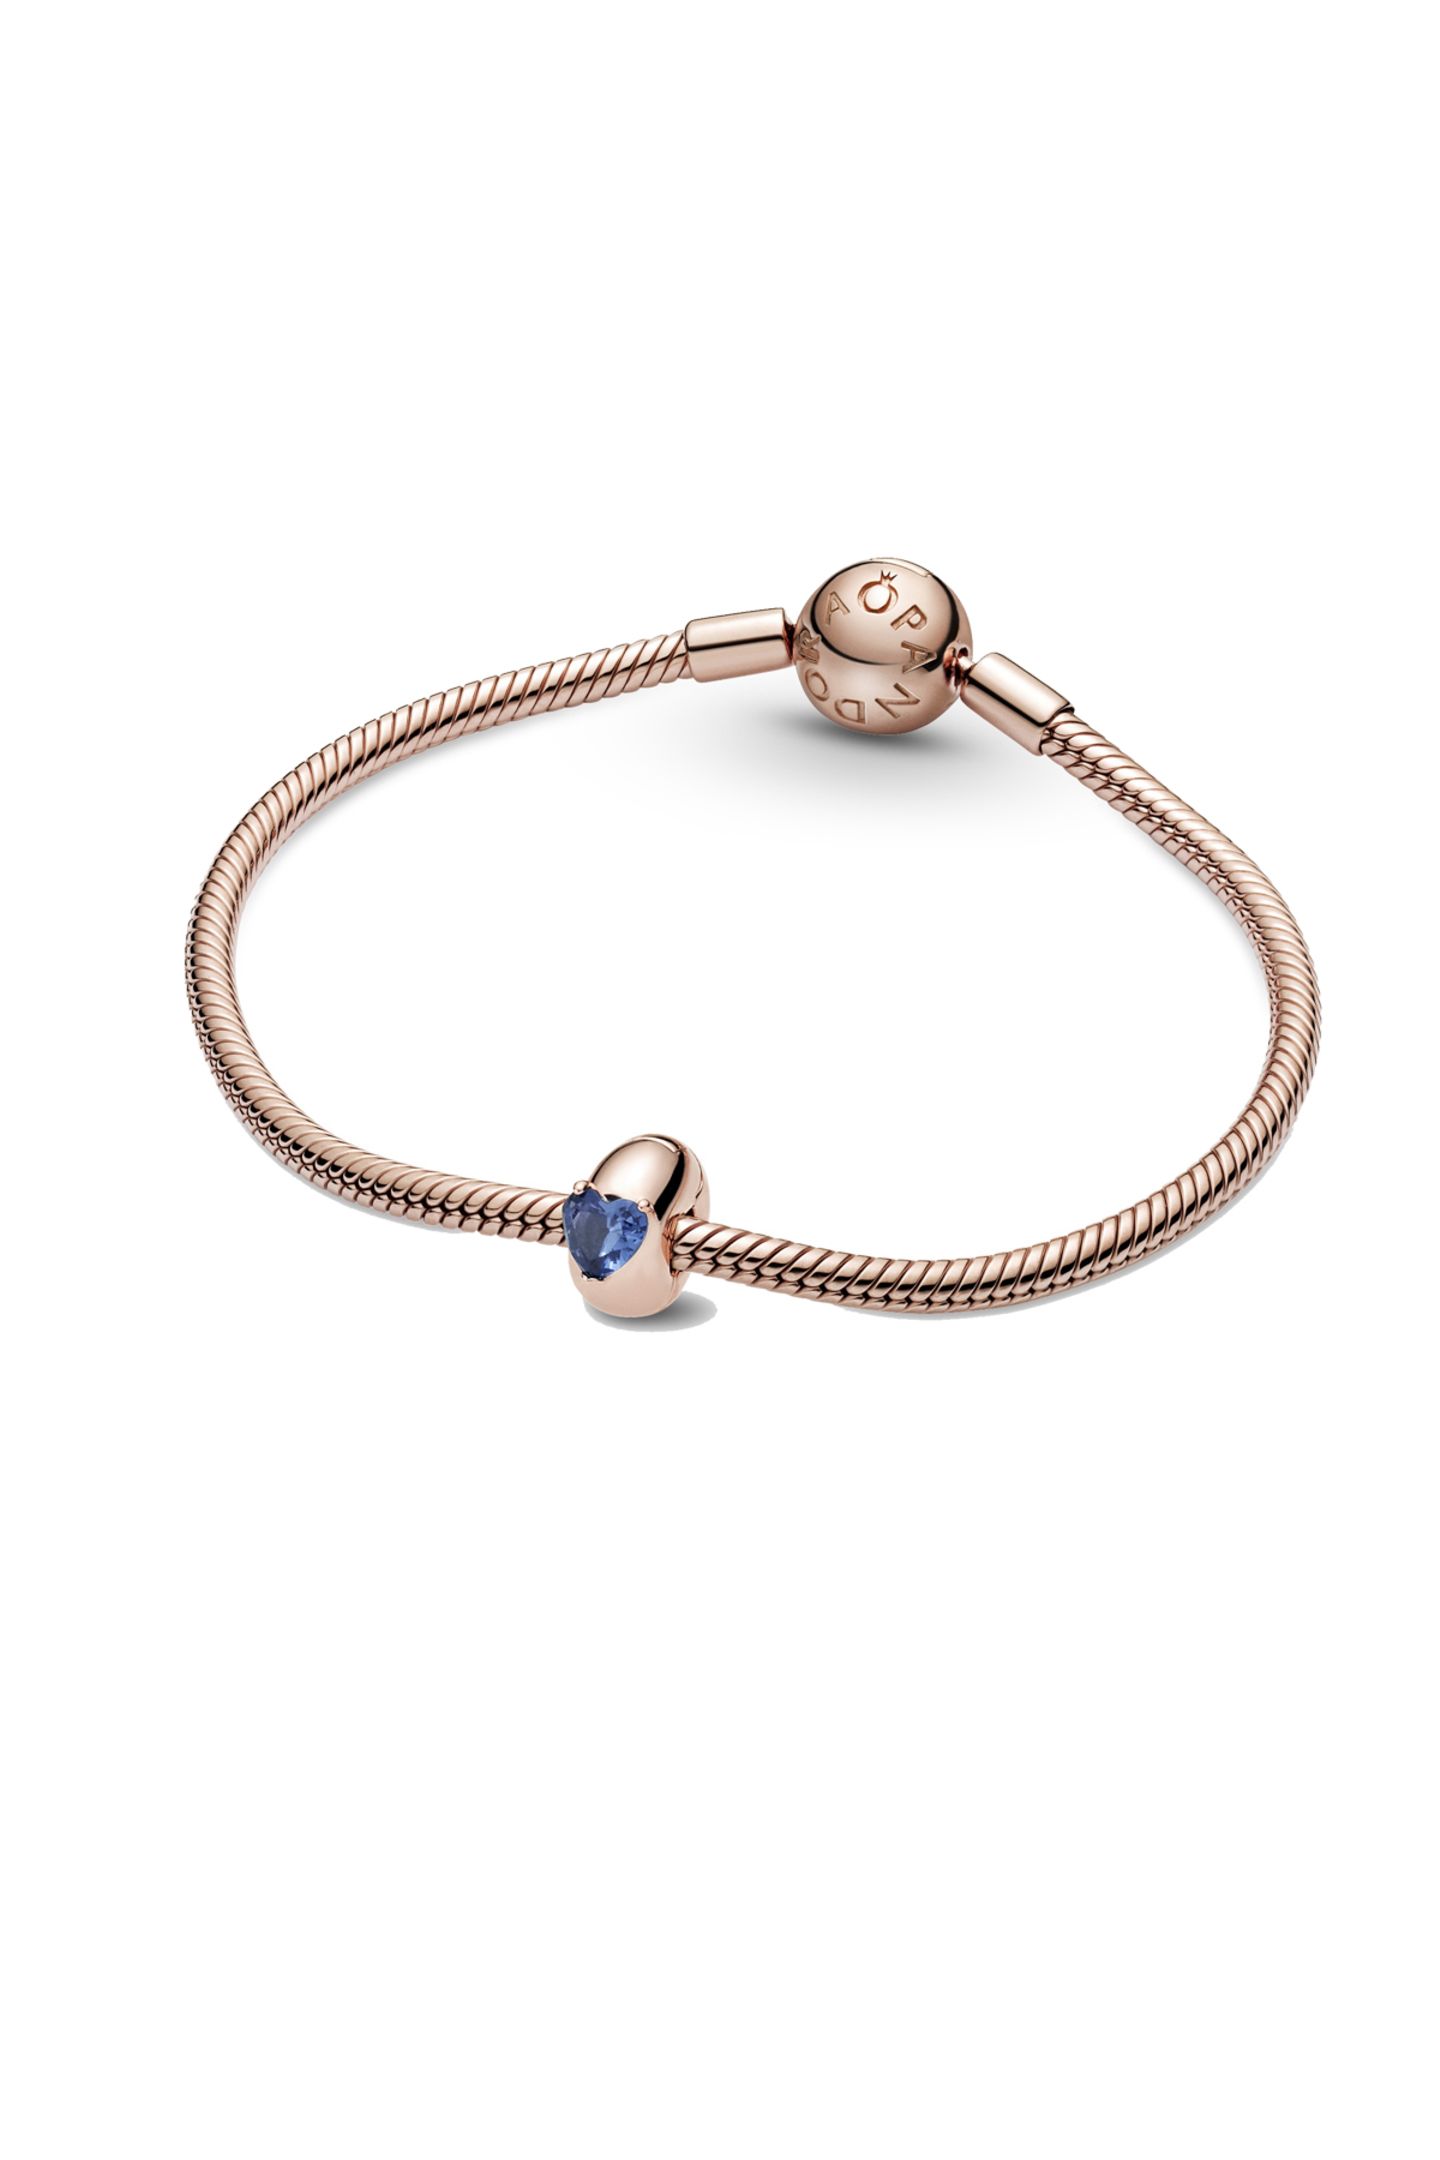 Dieses Charm ist handveredelt aus Pandora Rose (14 Karat rosévergoldete Metalllegierung) und von den Solitär-Ringen inspiriert. Passend dazu gibt es das Armand in Roségold. Von Pandora, kostet zusammen ca. 180 Euro. 